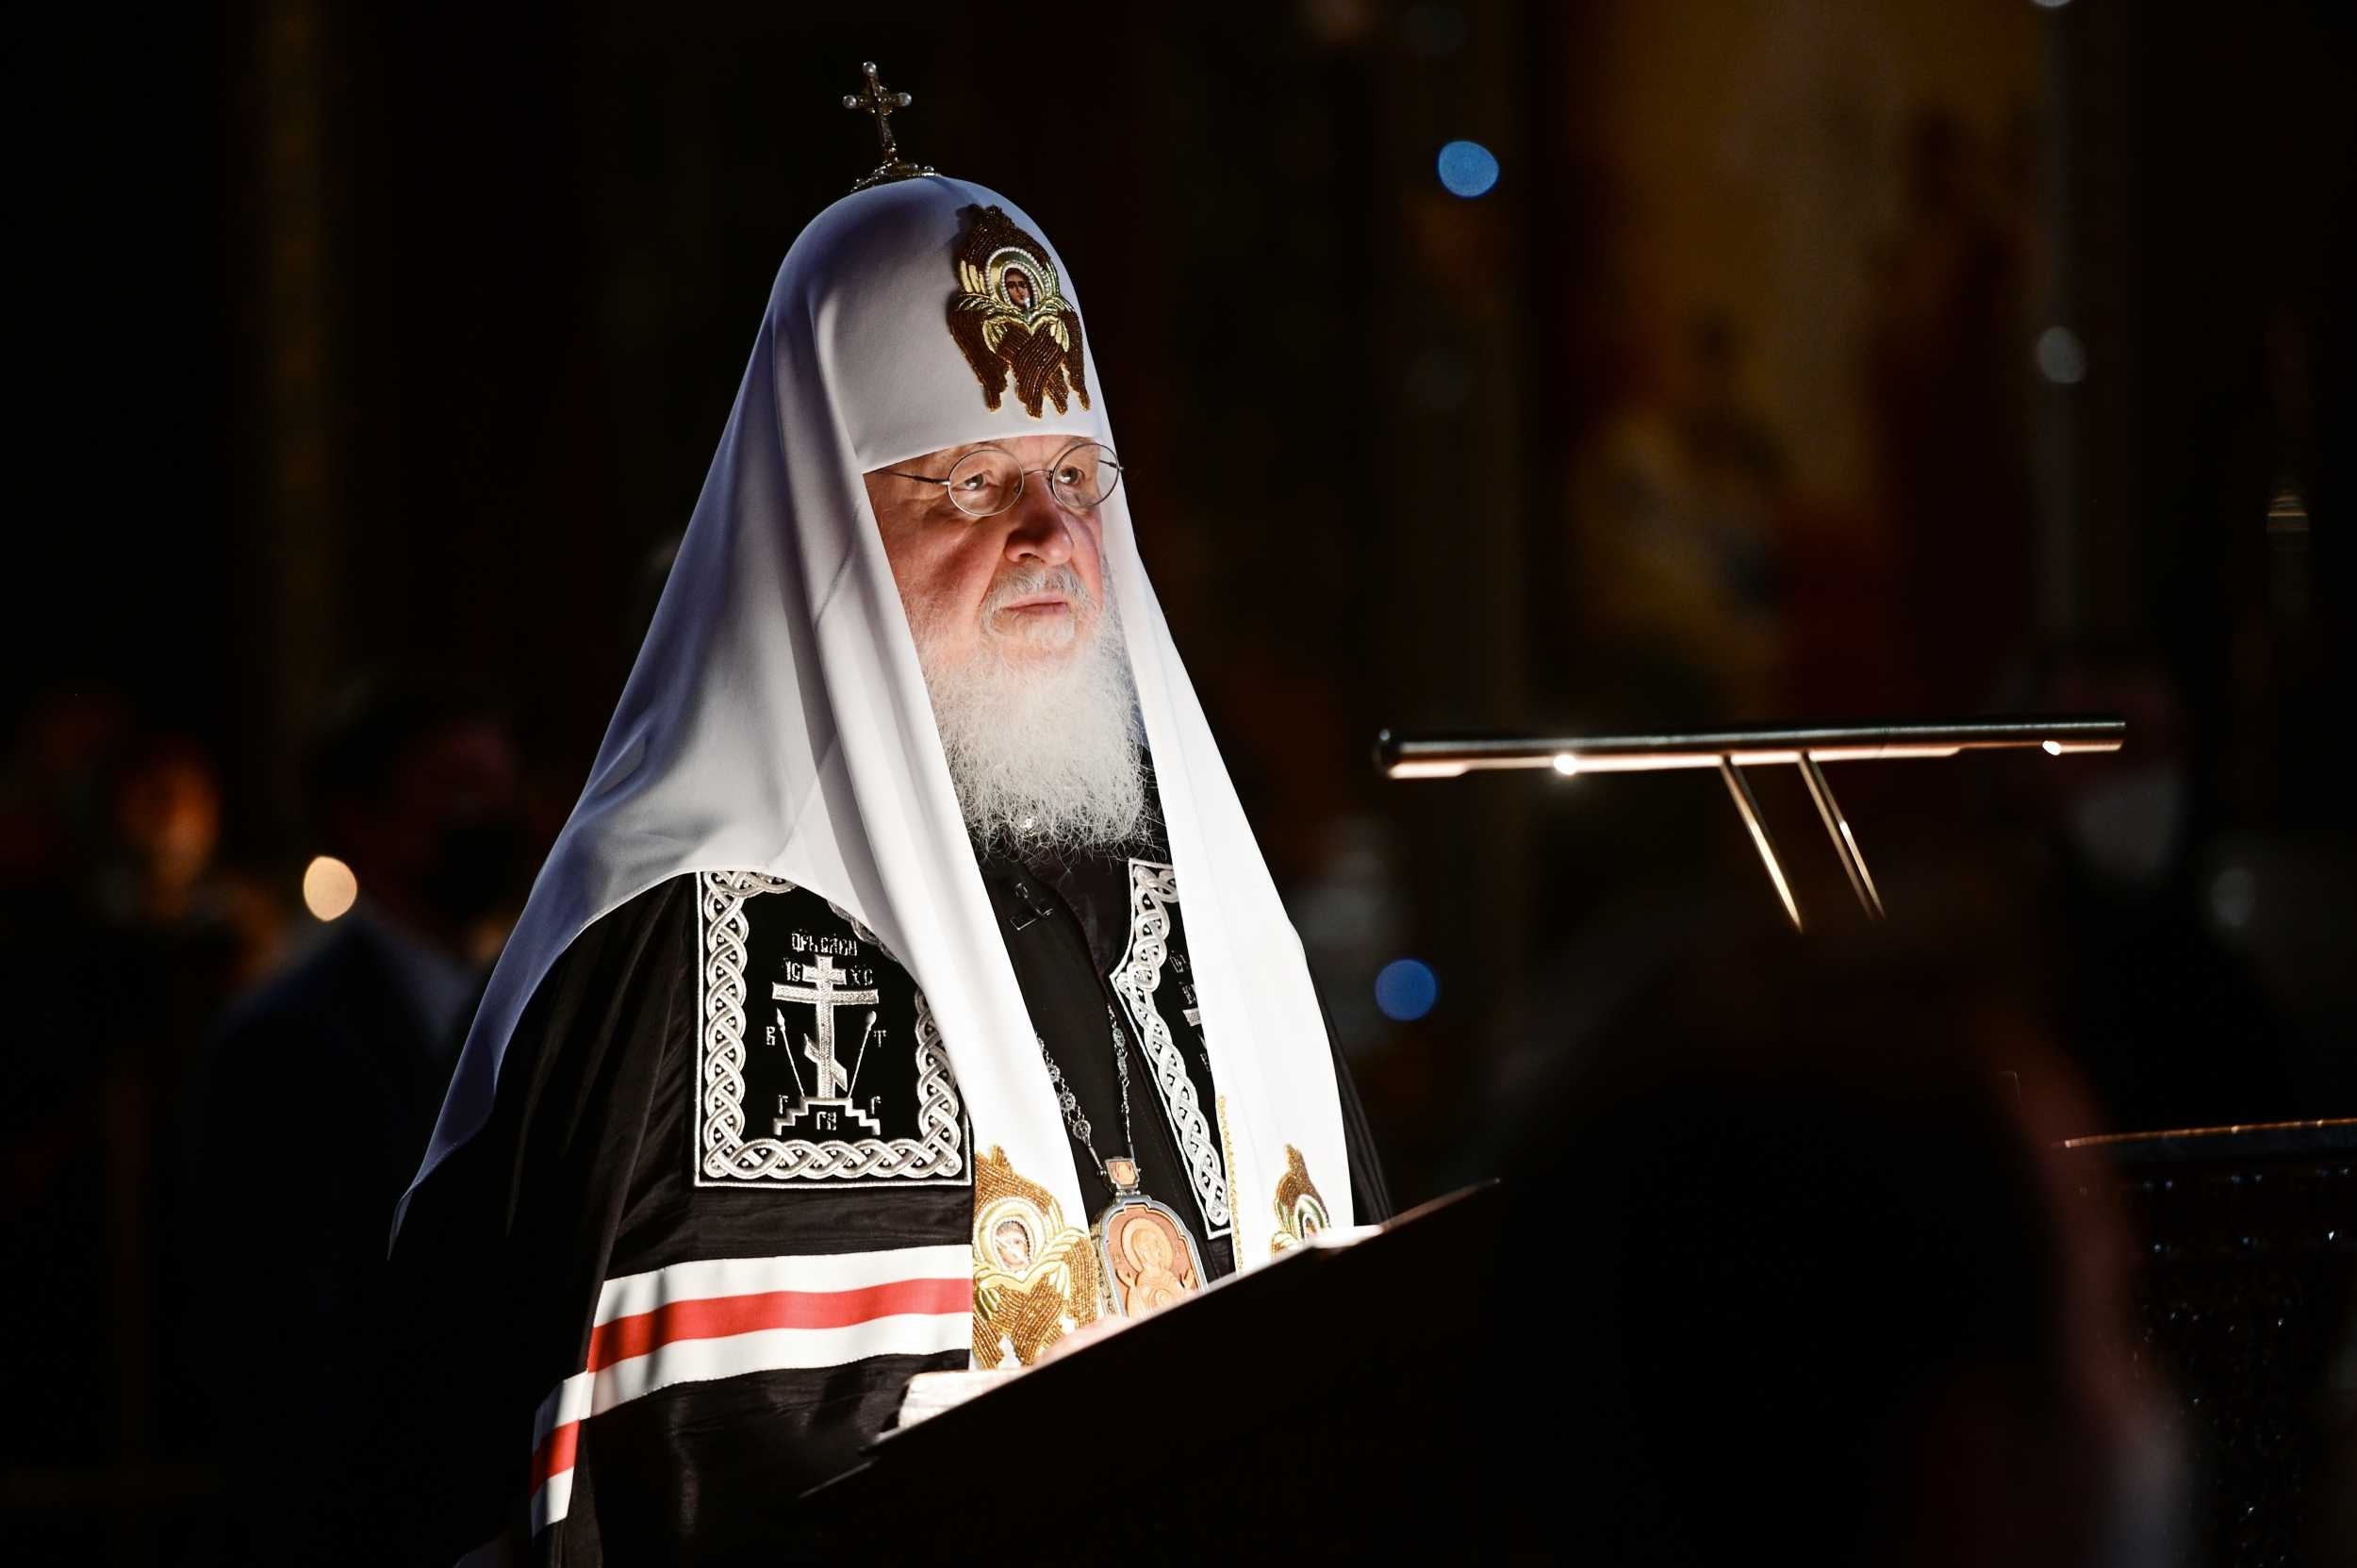 Встреча Папы и Патриарха Кирилла проблематична из-за его слов